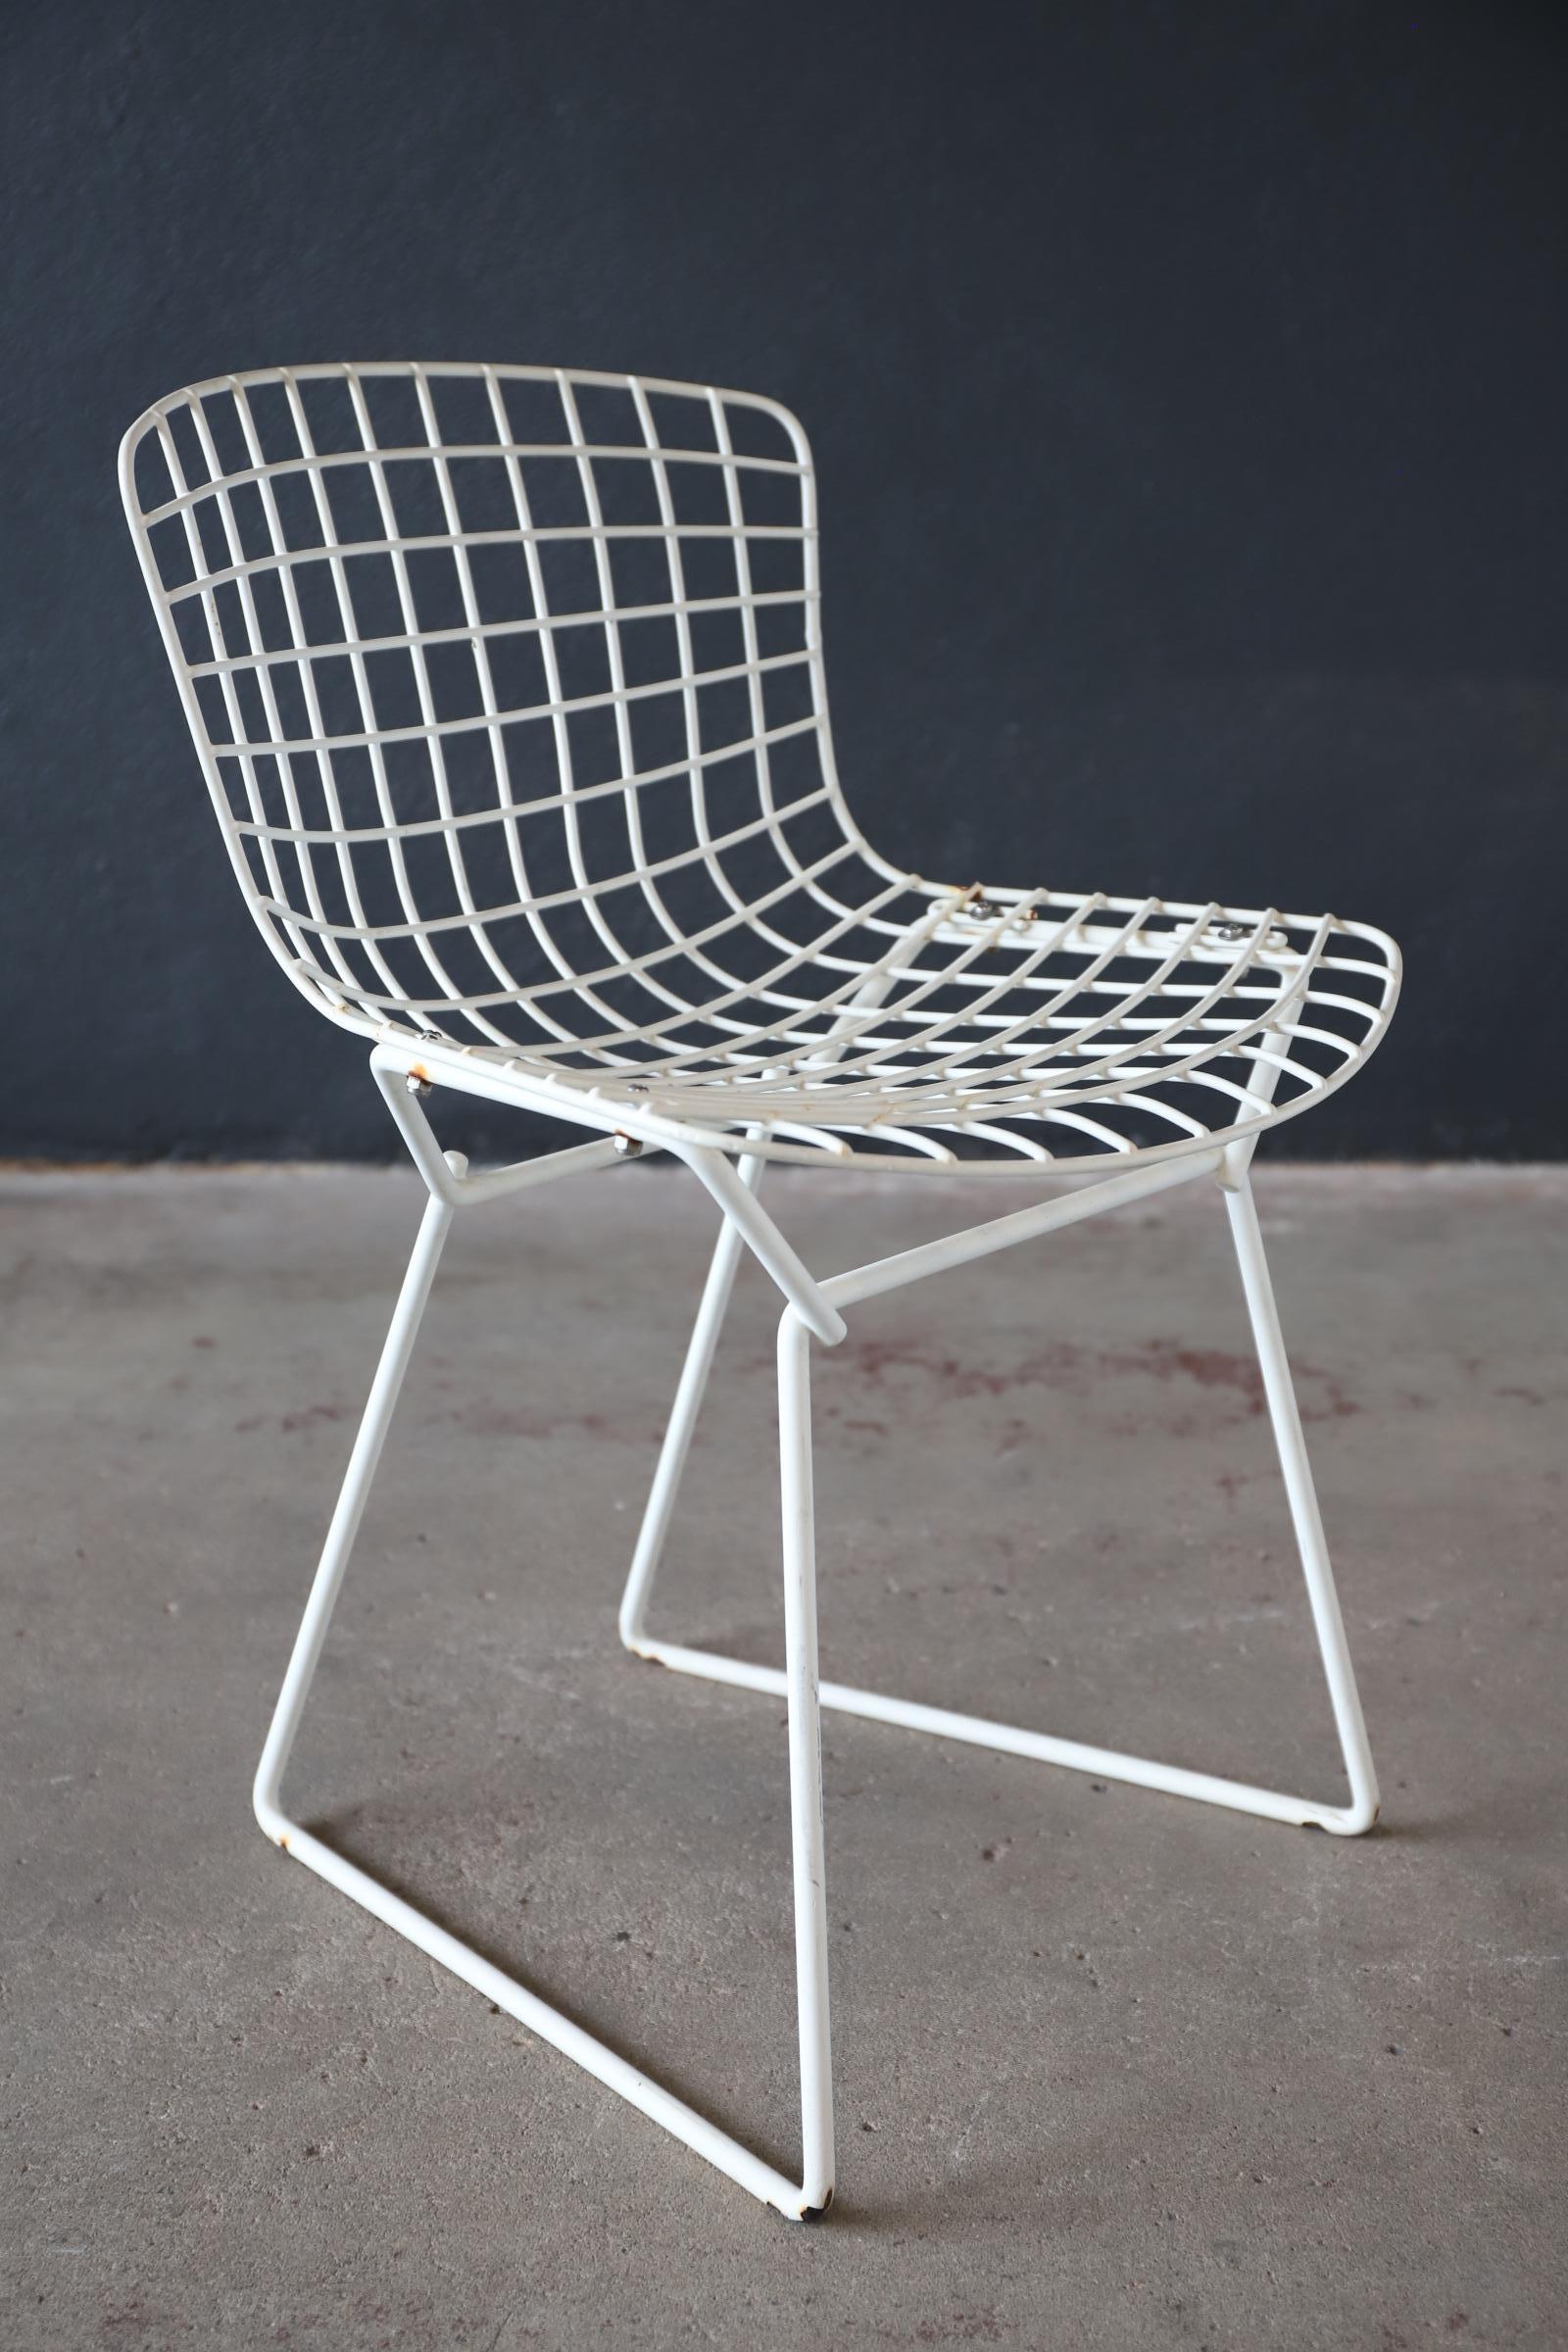 Ein typischer Entwurf des berühmten Designers Harry Bertoia für Knoll. Ein Beistellstuhl aus Draht in Kindergröße. Hervorragend für den Innen- und Außenbereich geeignet. Ihr Kind wird mit Sicherheit der coolste Stuhl in der Gegend sein. Zur